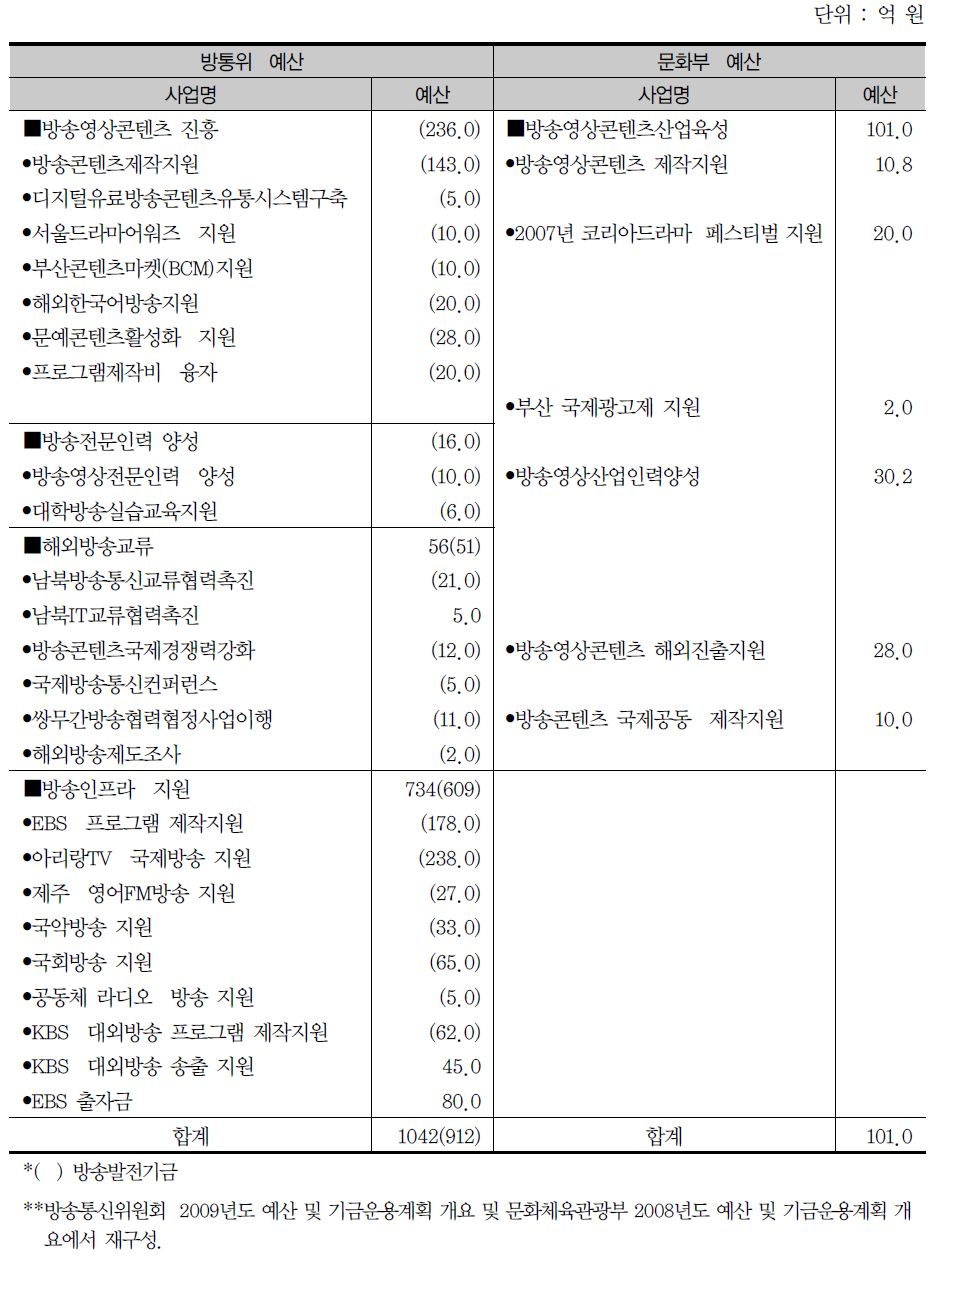 방송영상산업 진흥 예산(2008년)